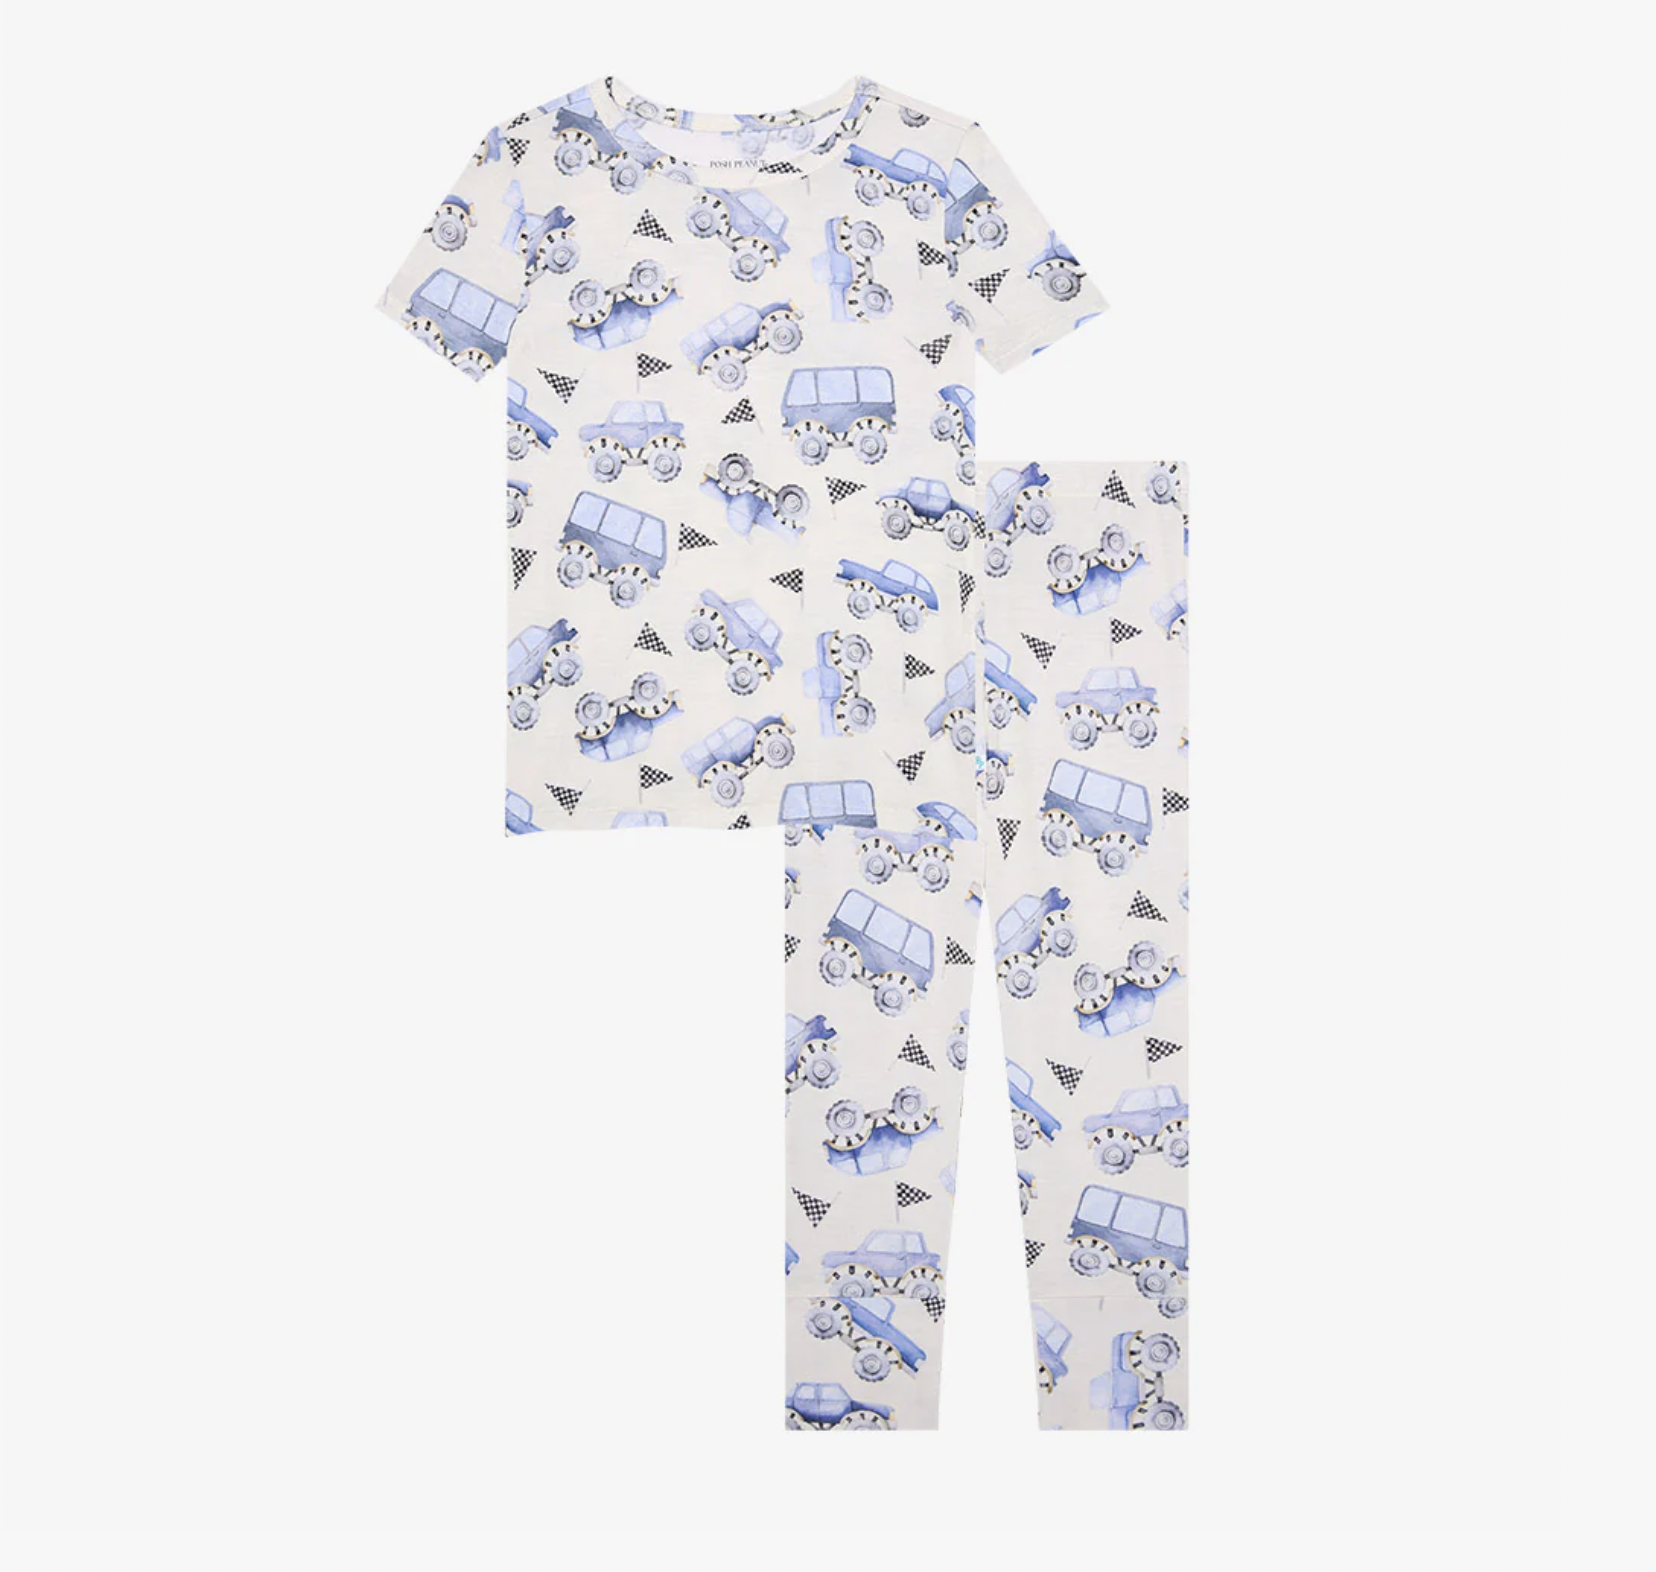 Posh Peanut Franklin - Short Sleeve Basic Pajama Set